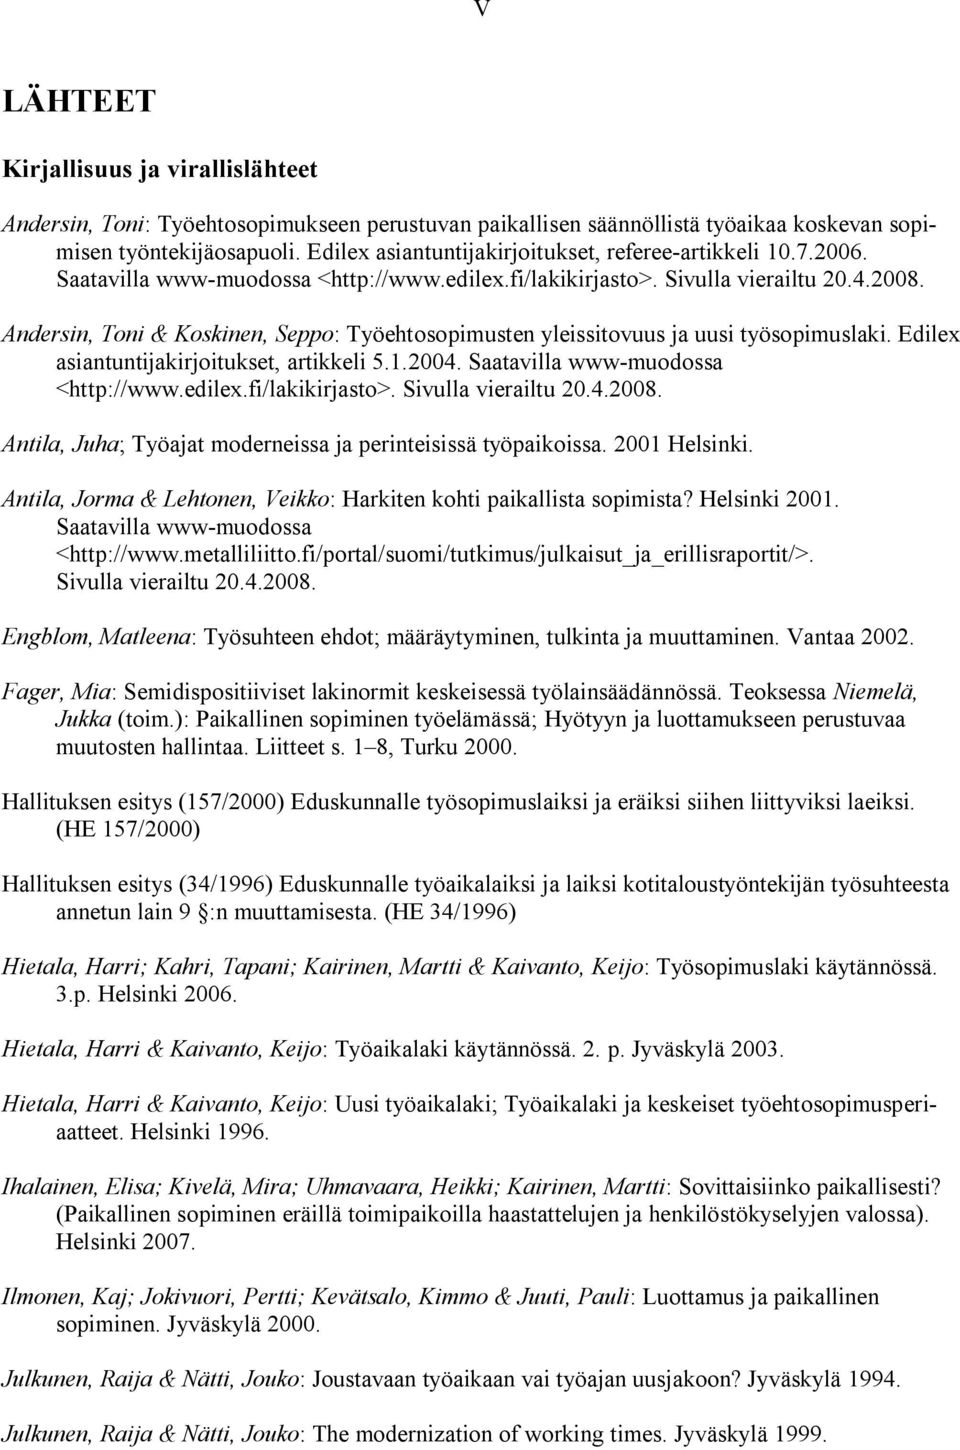 Andersin, Toni & Koskinen, Seppo: Työehtosopimusten yleissitovuus ja uusi työsopimuslaki. Edilex asiantuntijakirjoitukset, artikkeli 5.1.2004. Saatavilla www-muodossa <http://www.edilex.